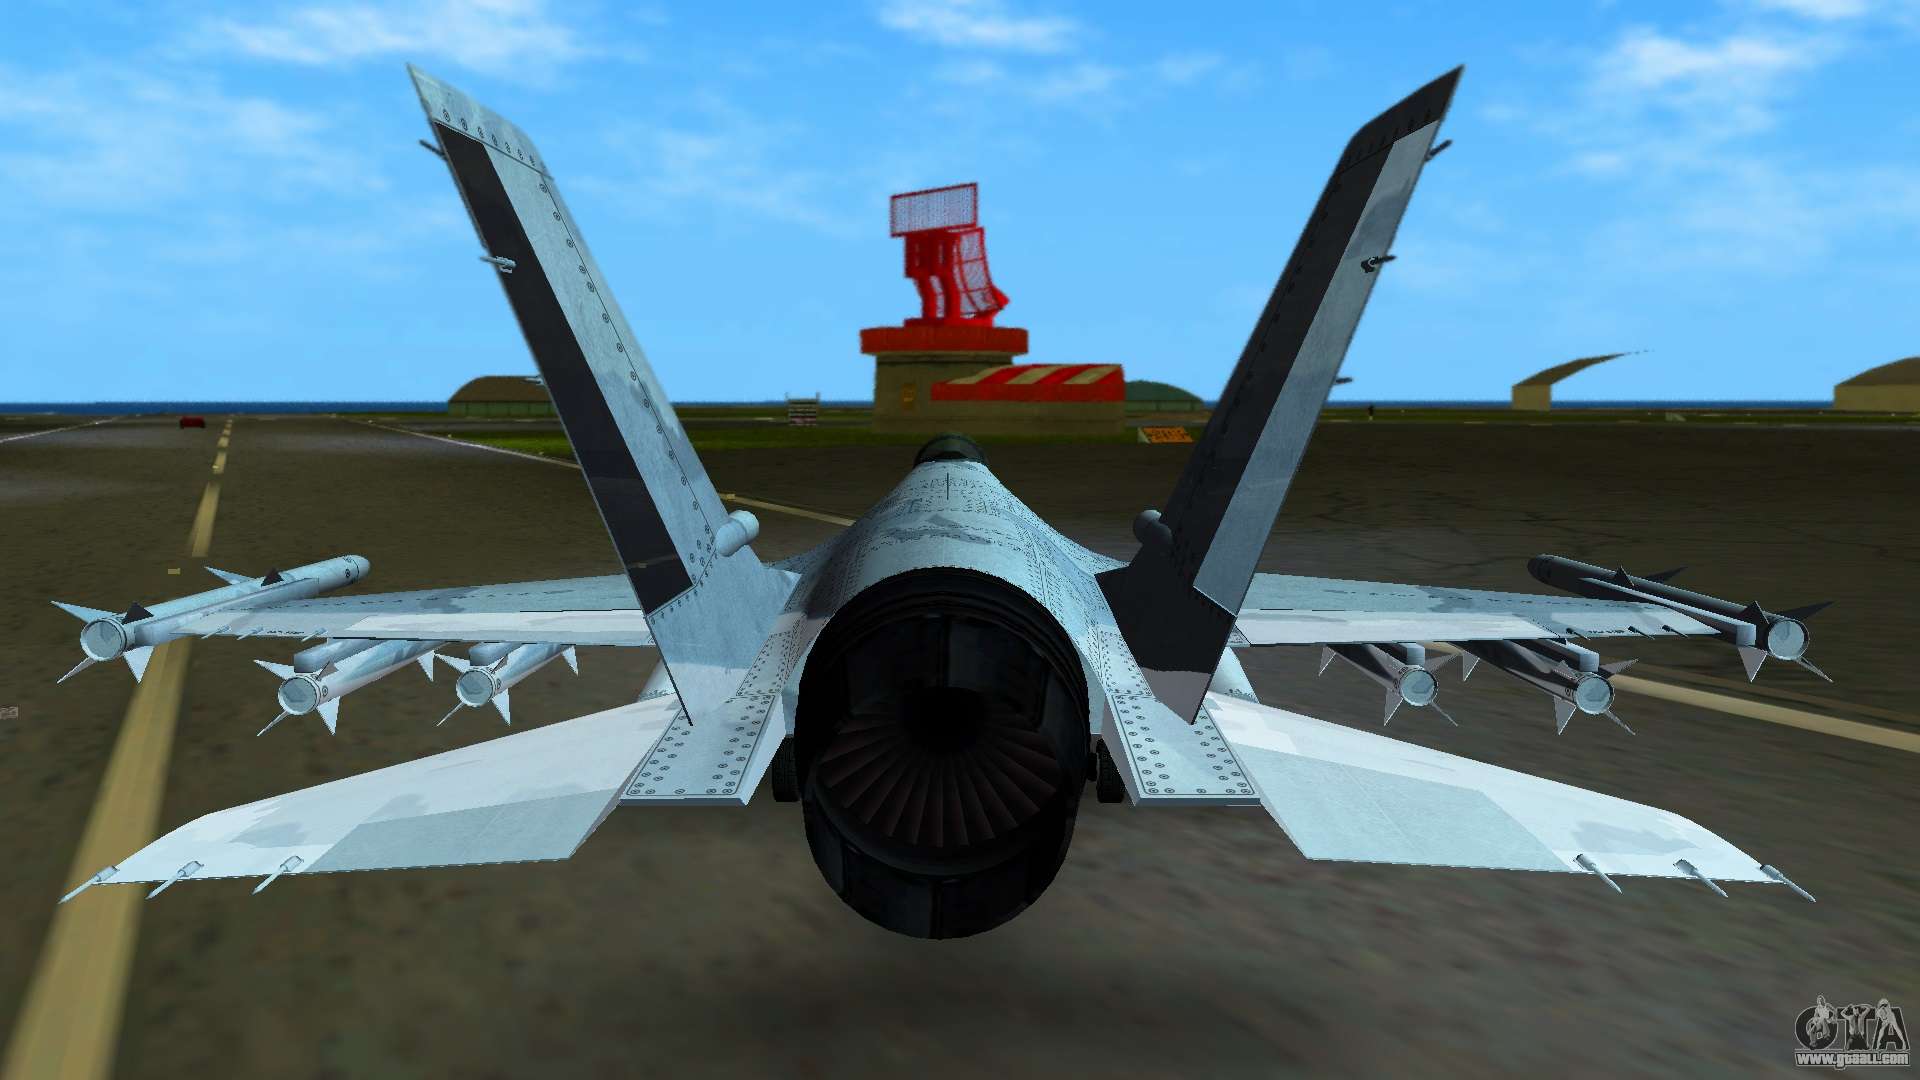 JoBuilt P-996 LAZER GTA 5 - screenshots, descrição e especificações do avião